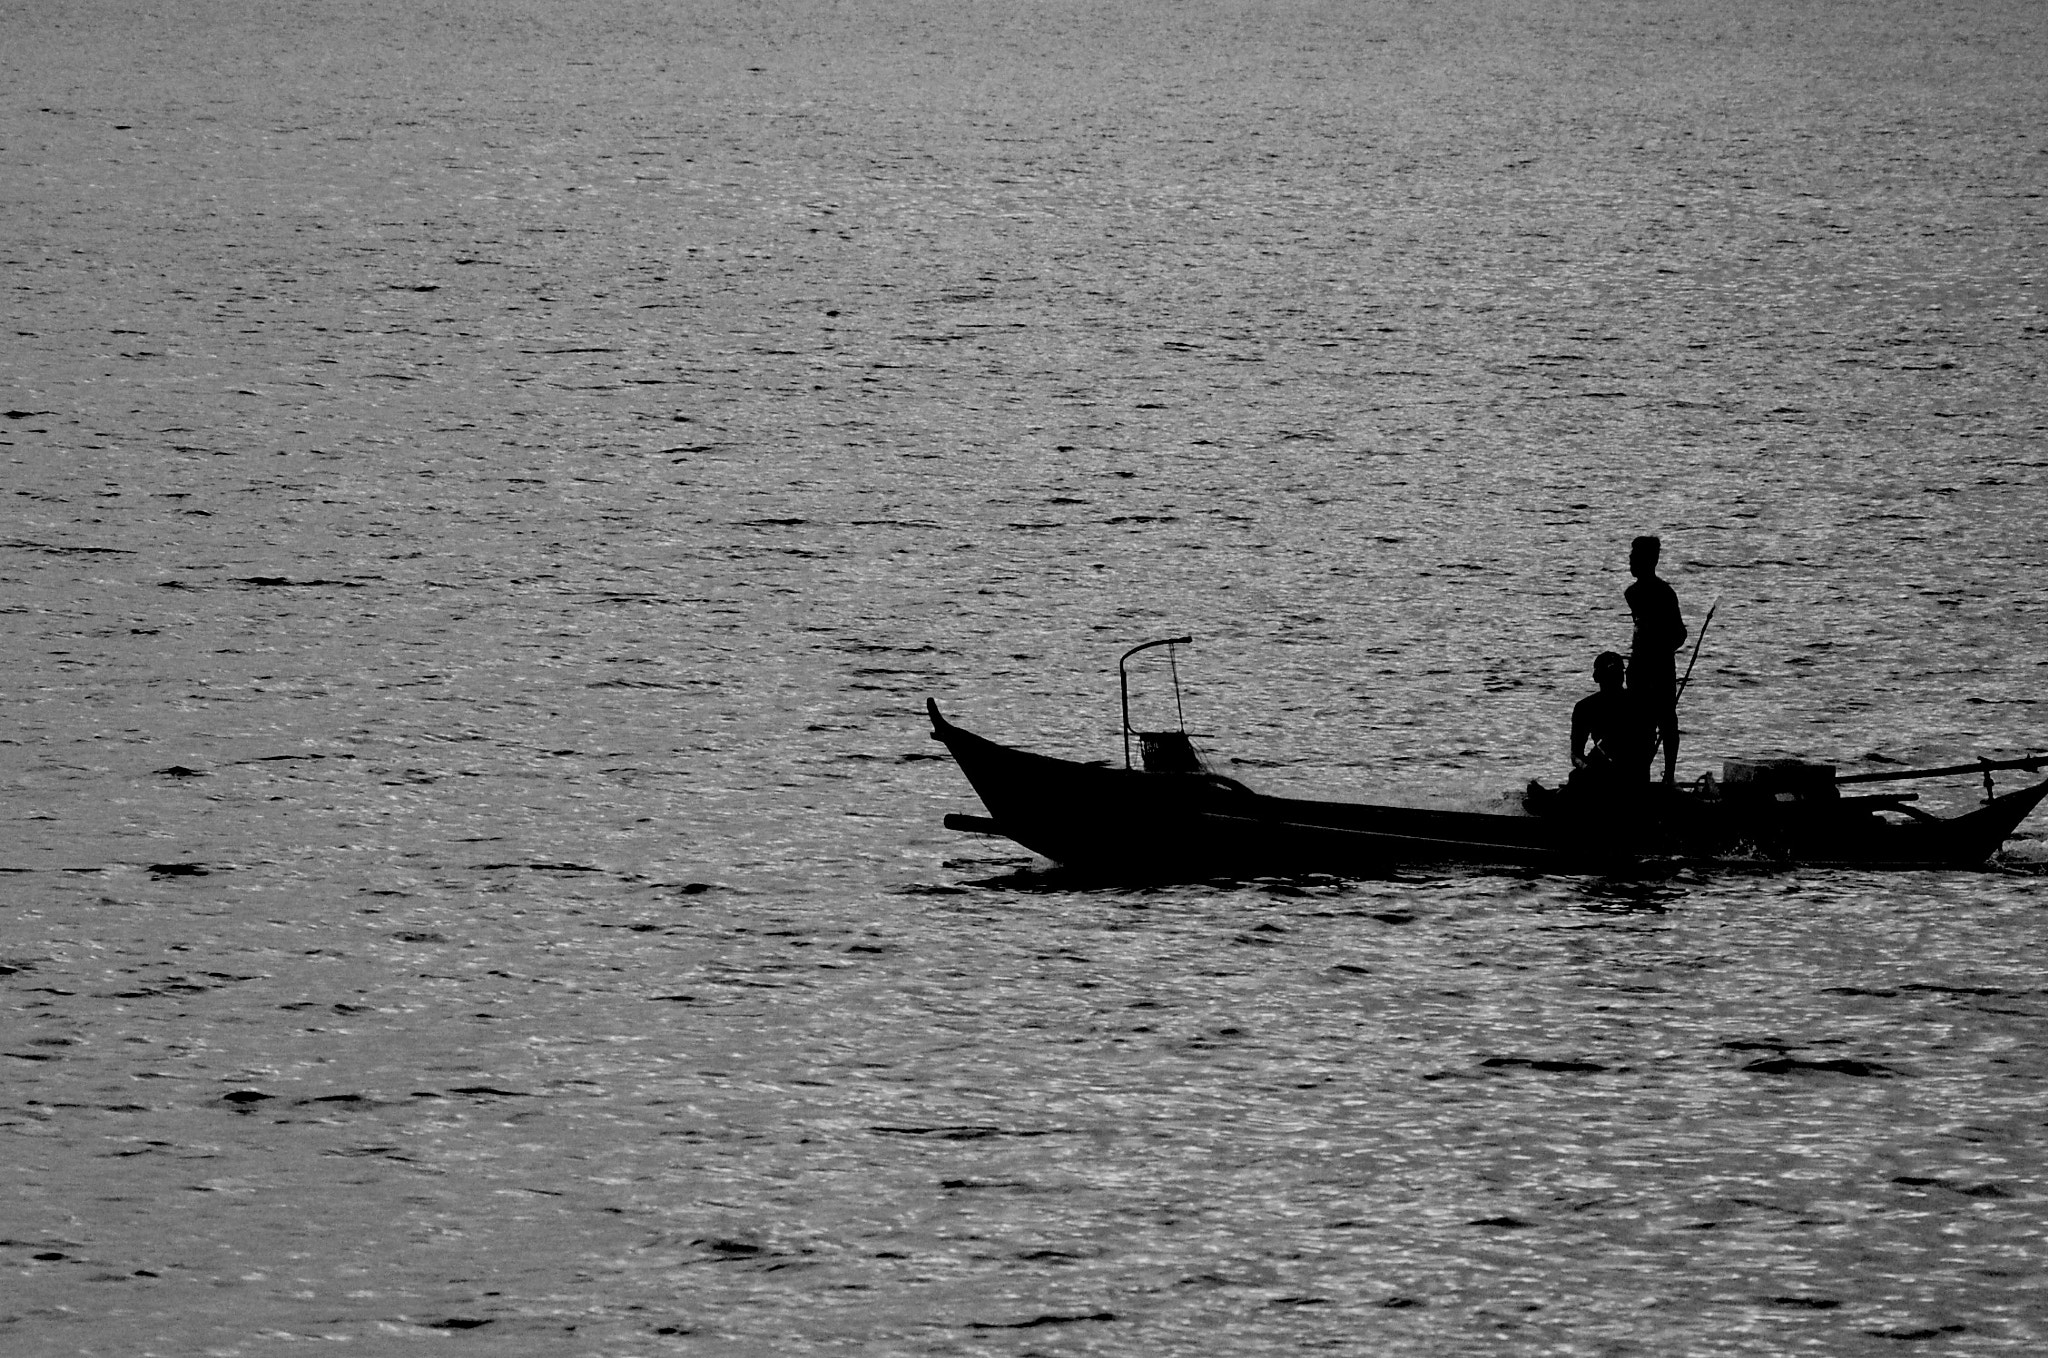 Nikon D50 + AF Zoom-Nikkor 70-300mm f/4-5.6D ED sample photo. Fishermen's silhouette photography